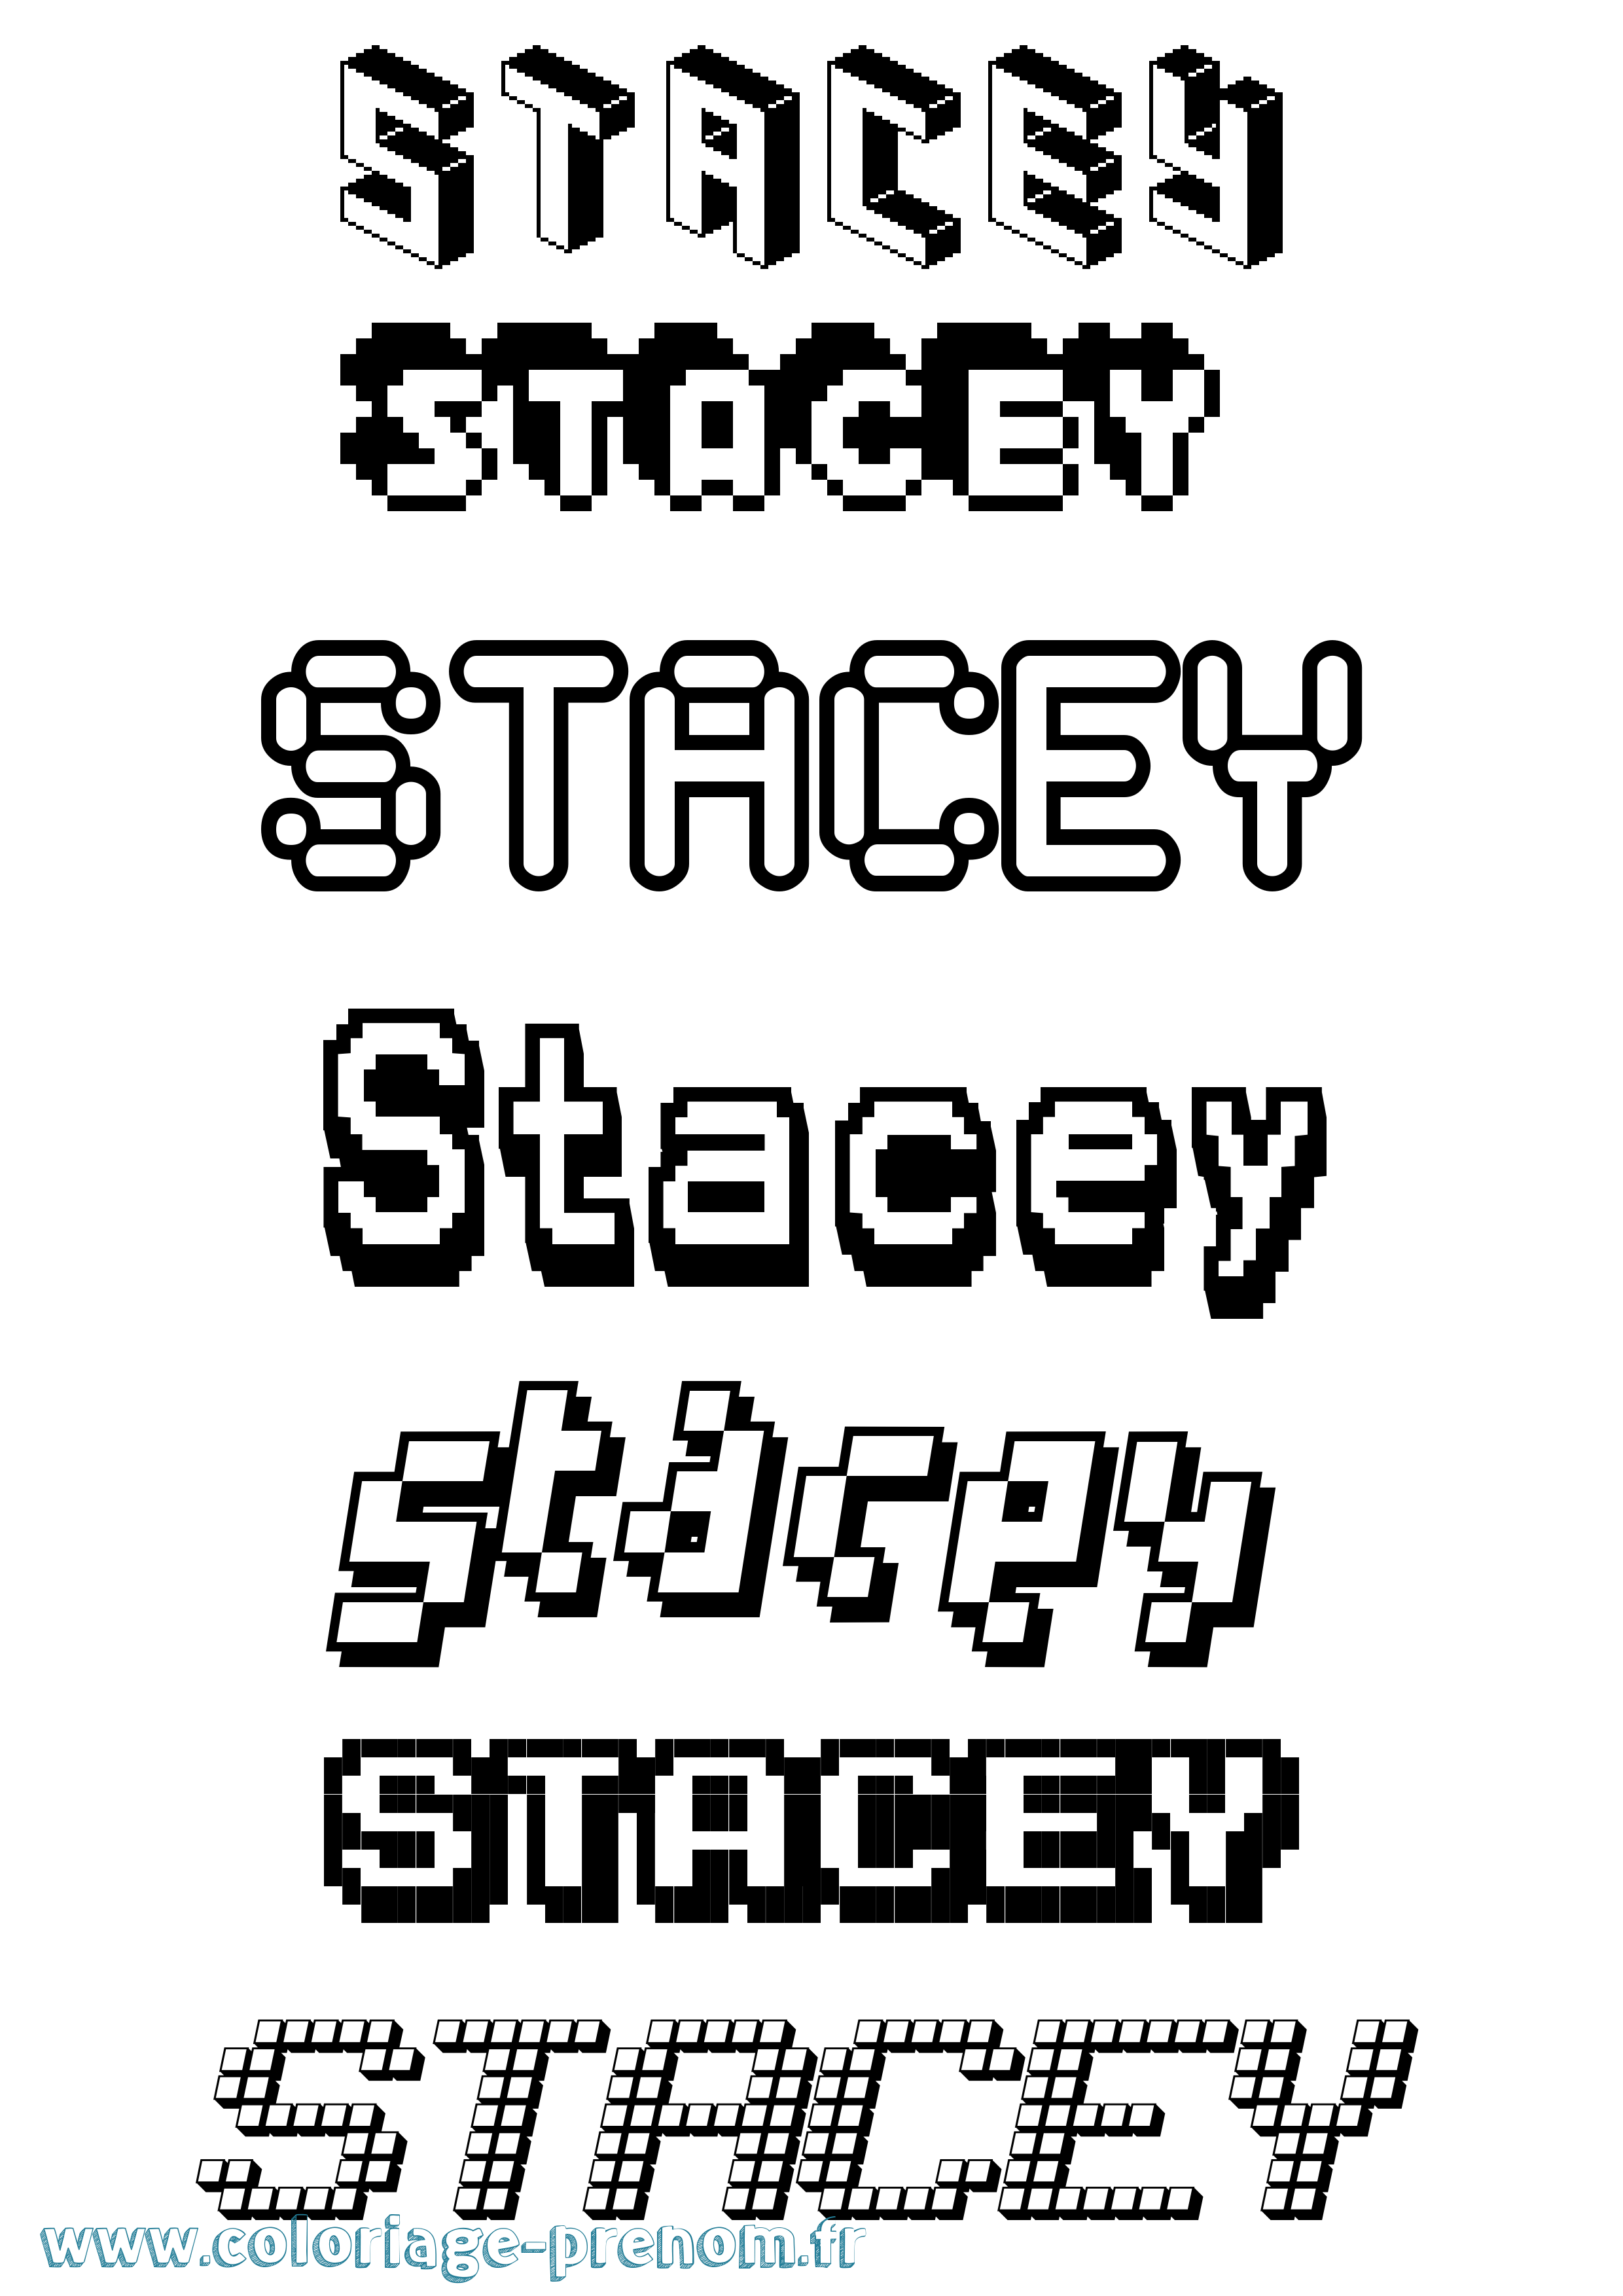 Coloriage prénom Stacey Pixel